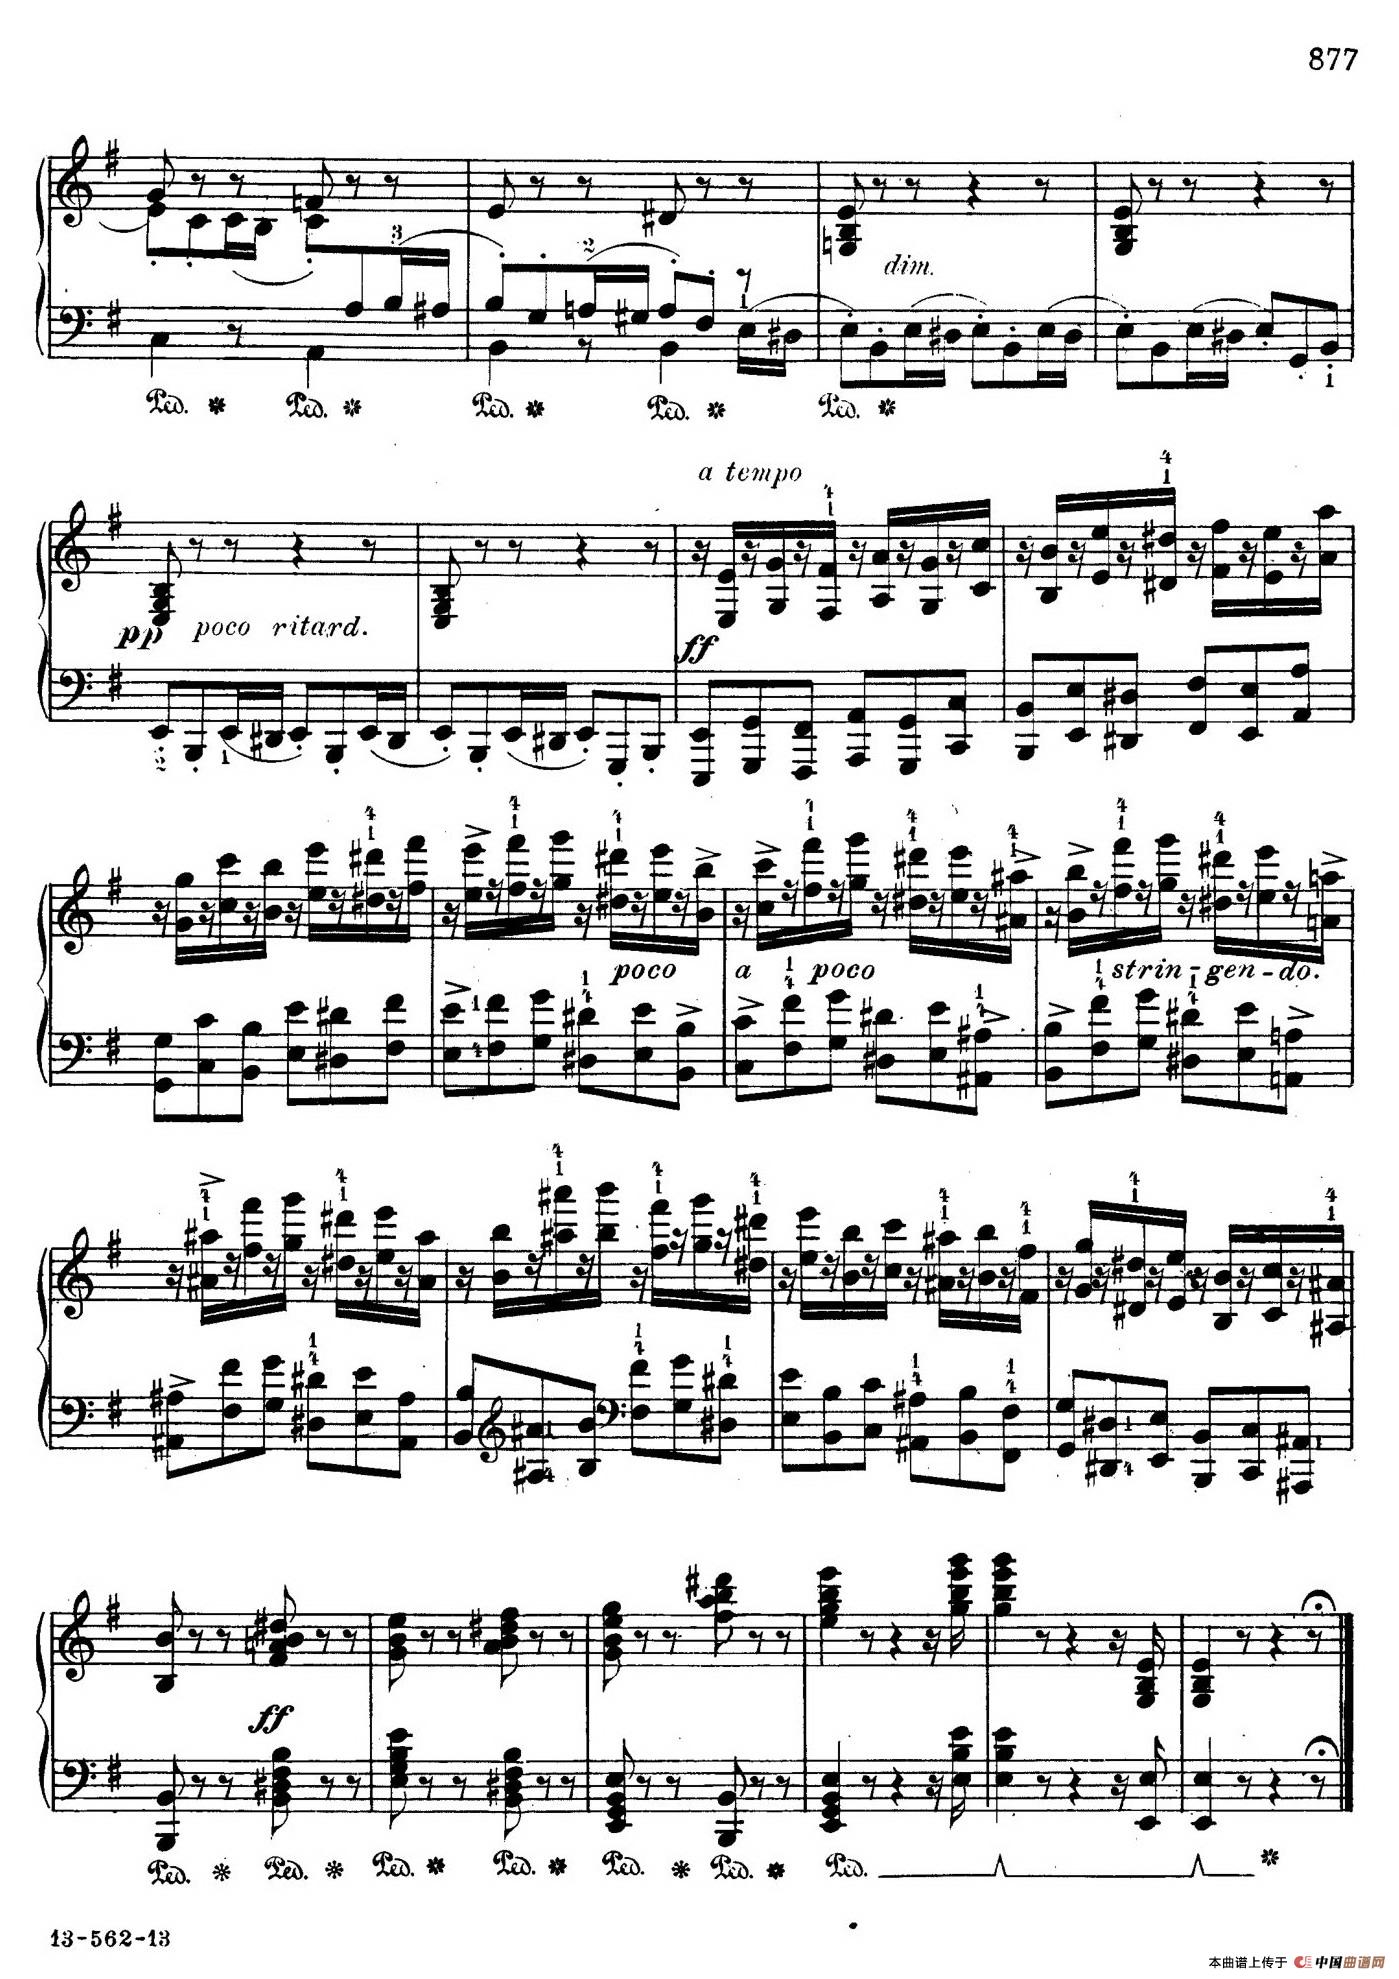 14钢琴谱(随想回旋曲)_器乐图片